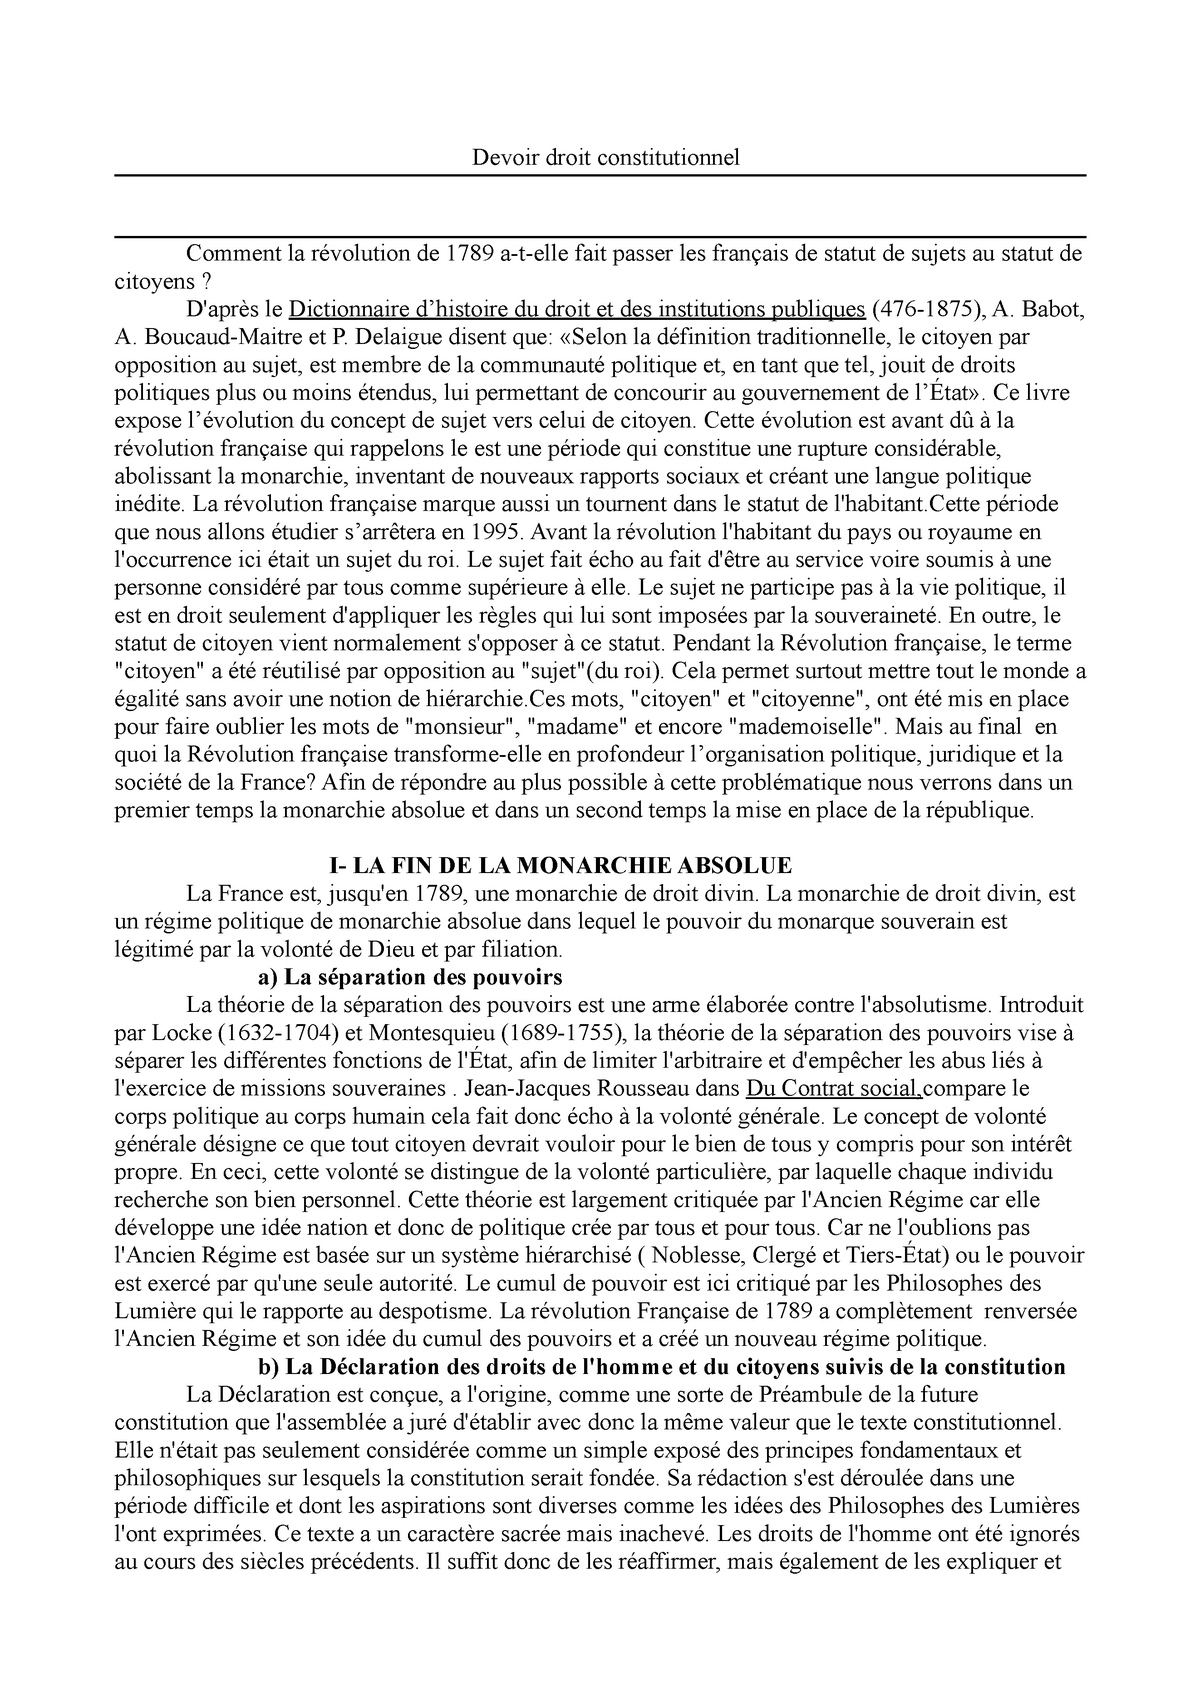 dissertation sur la revolution francaise 1ere